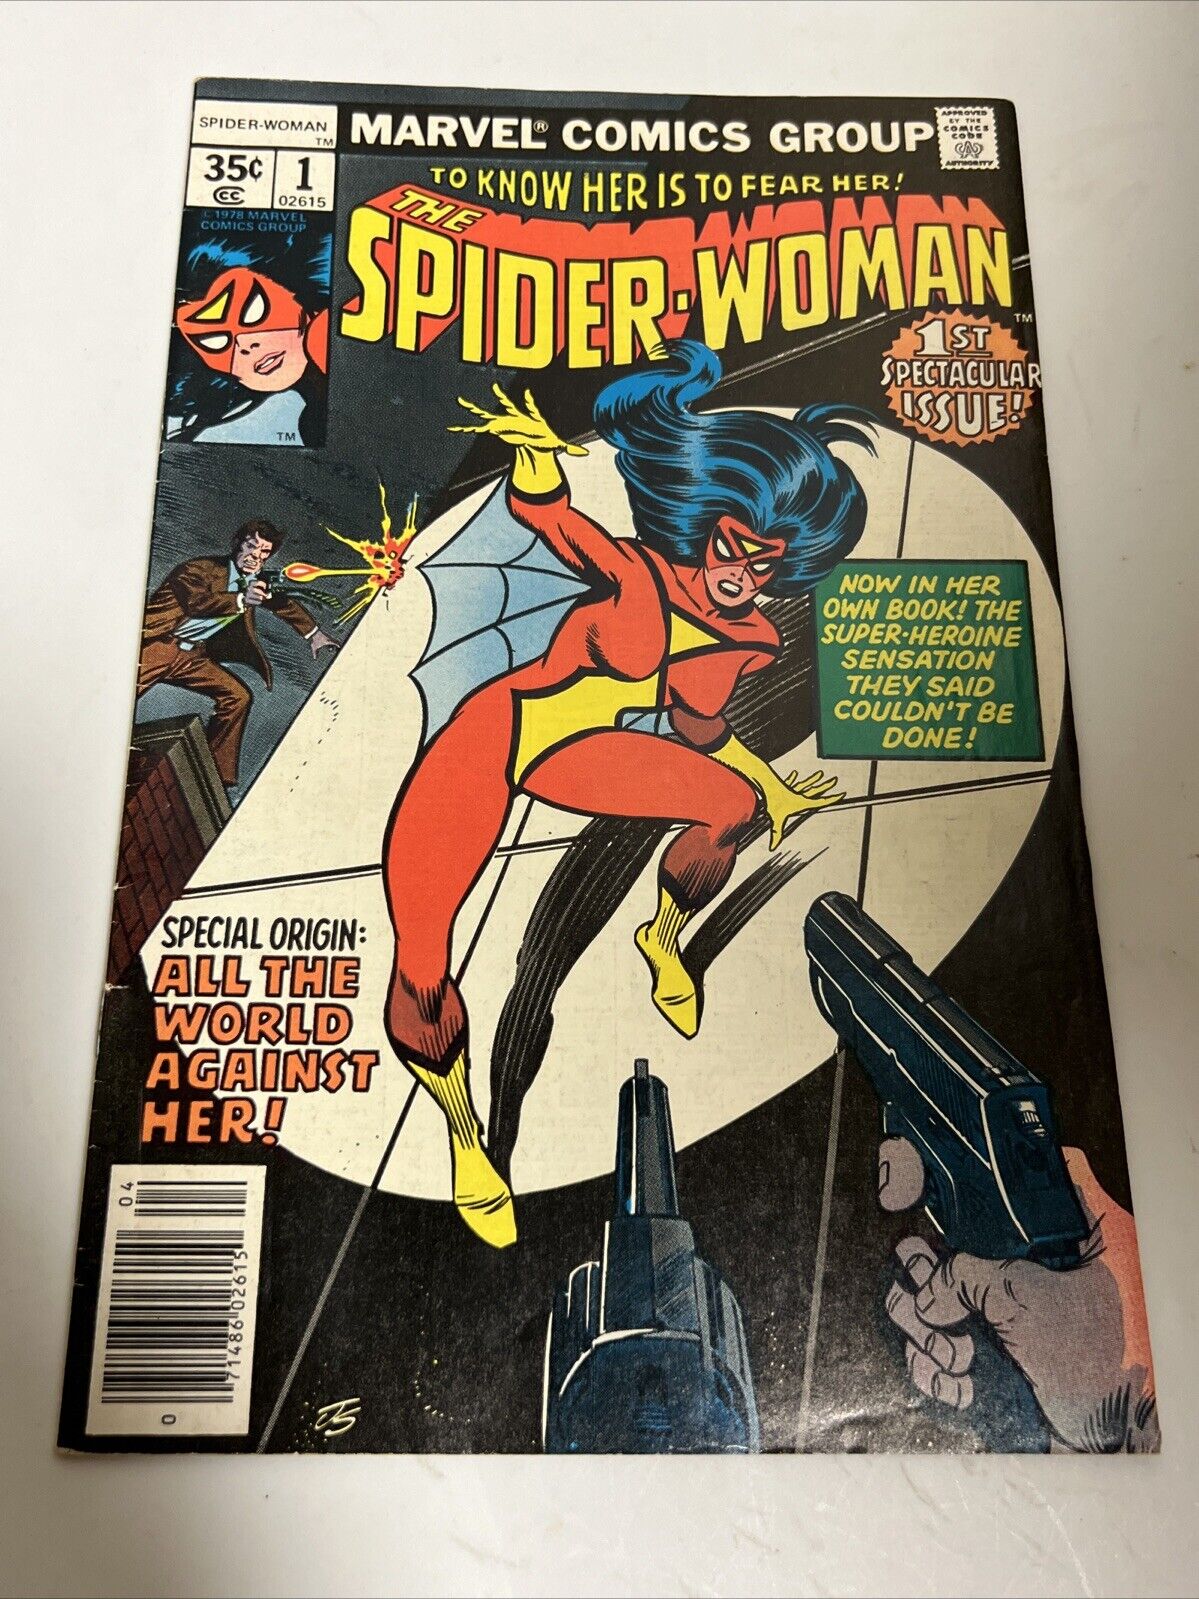 Spider-Woman #1 - Apr 1978 - Vol.1 - Major Key